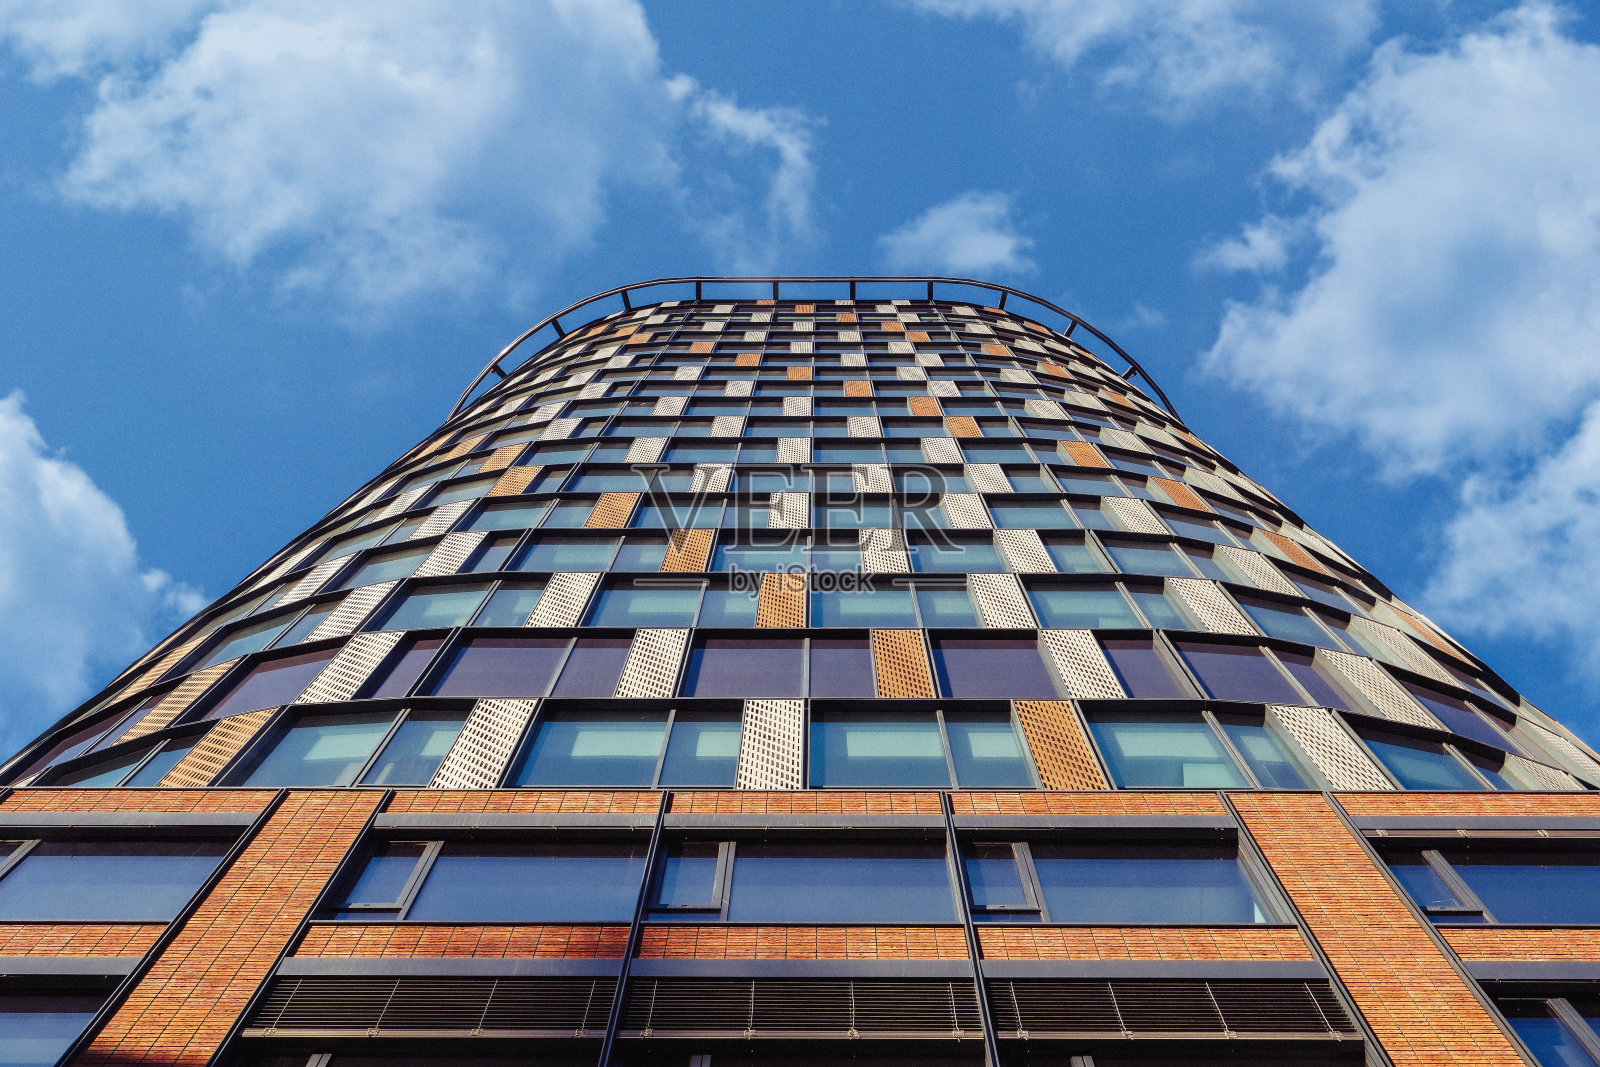 低视角双城大厦摩天办公楼采用矩形砖图案照片摄影图片